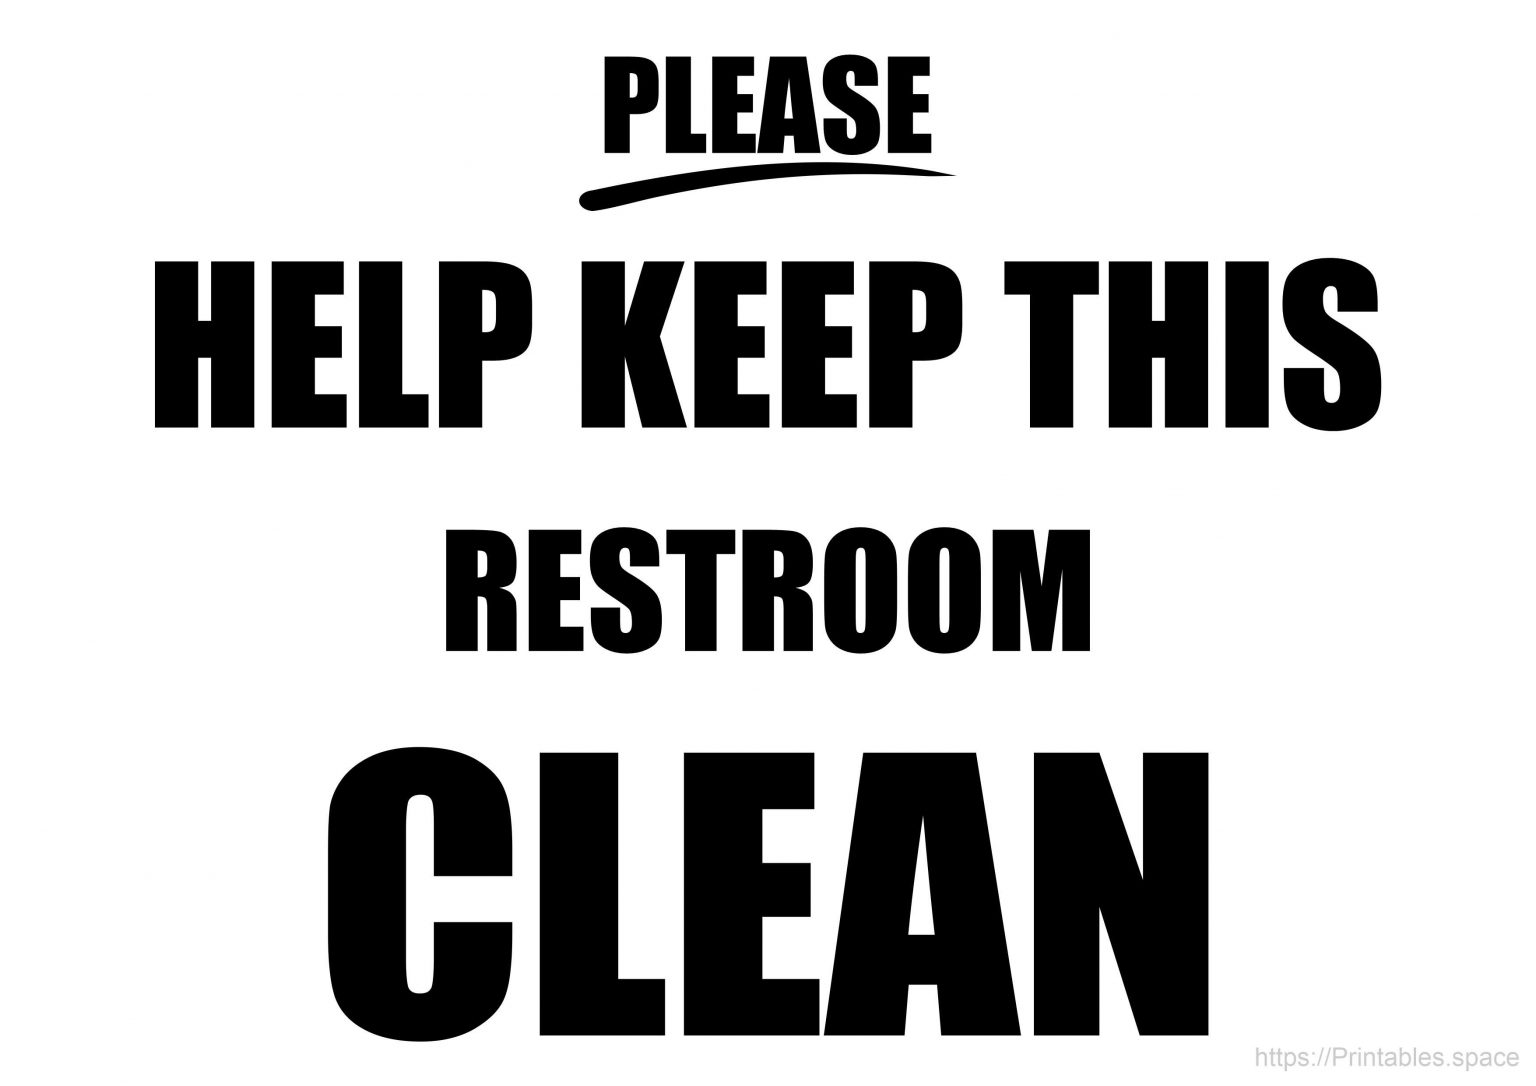 Keep Bathroom Clean Sign Printable